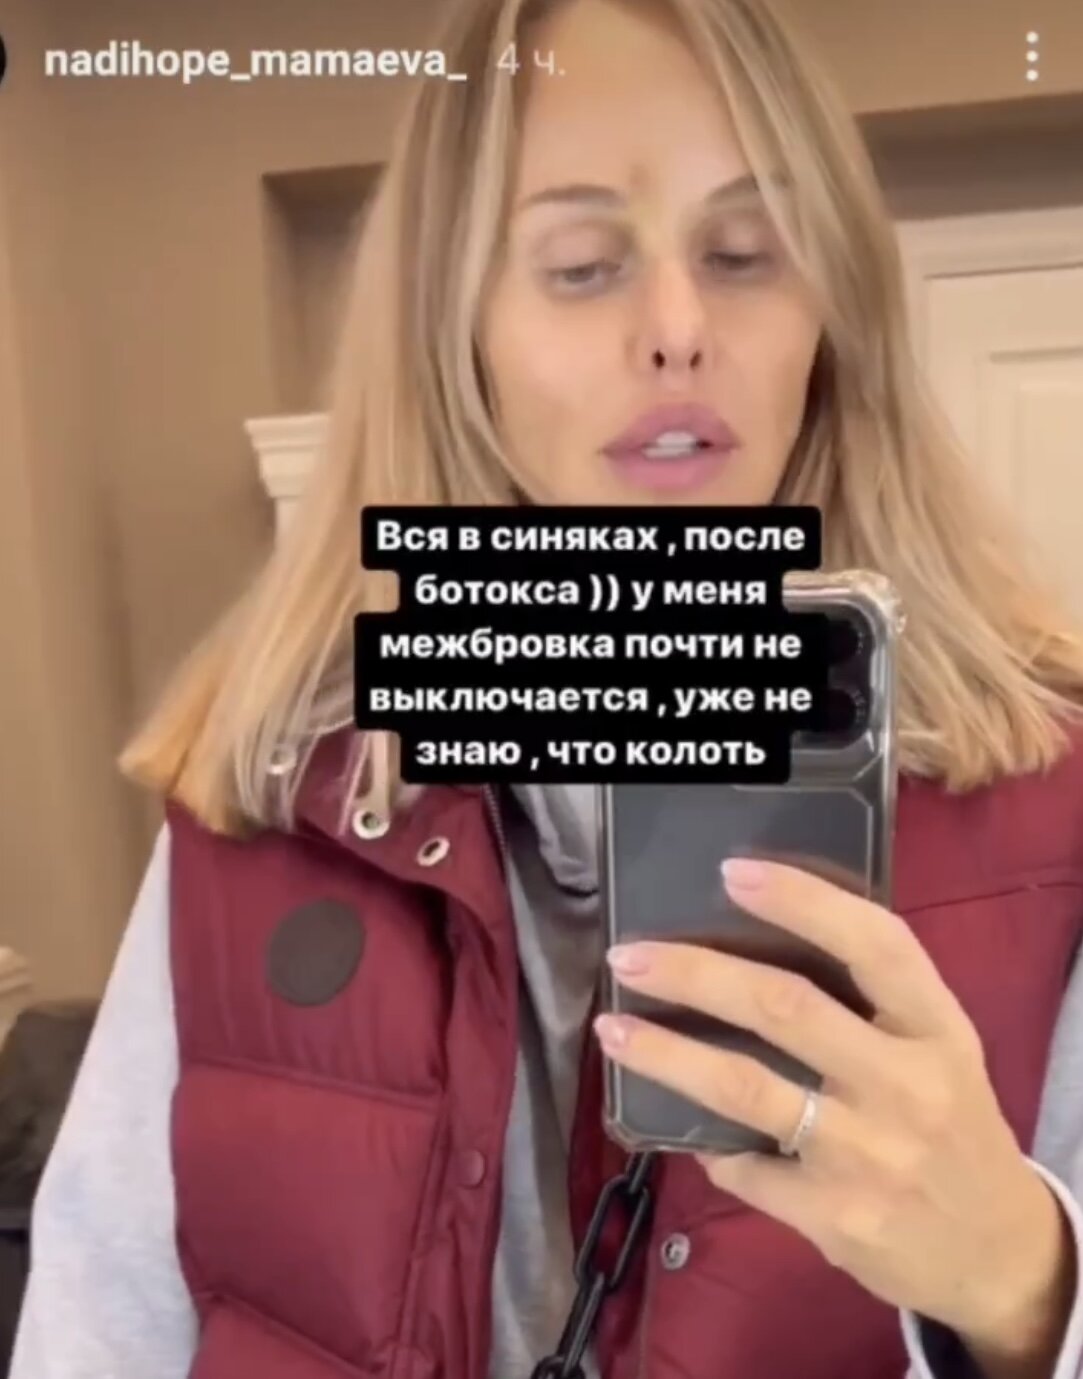 Даже ботокс не помогает: пластиковая жена Павла Мамаева показала себя без фильтров и уже не знает, что ещё вколоть в лицо